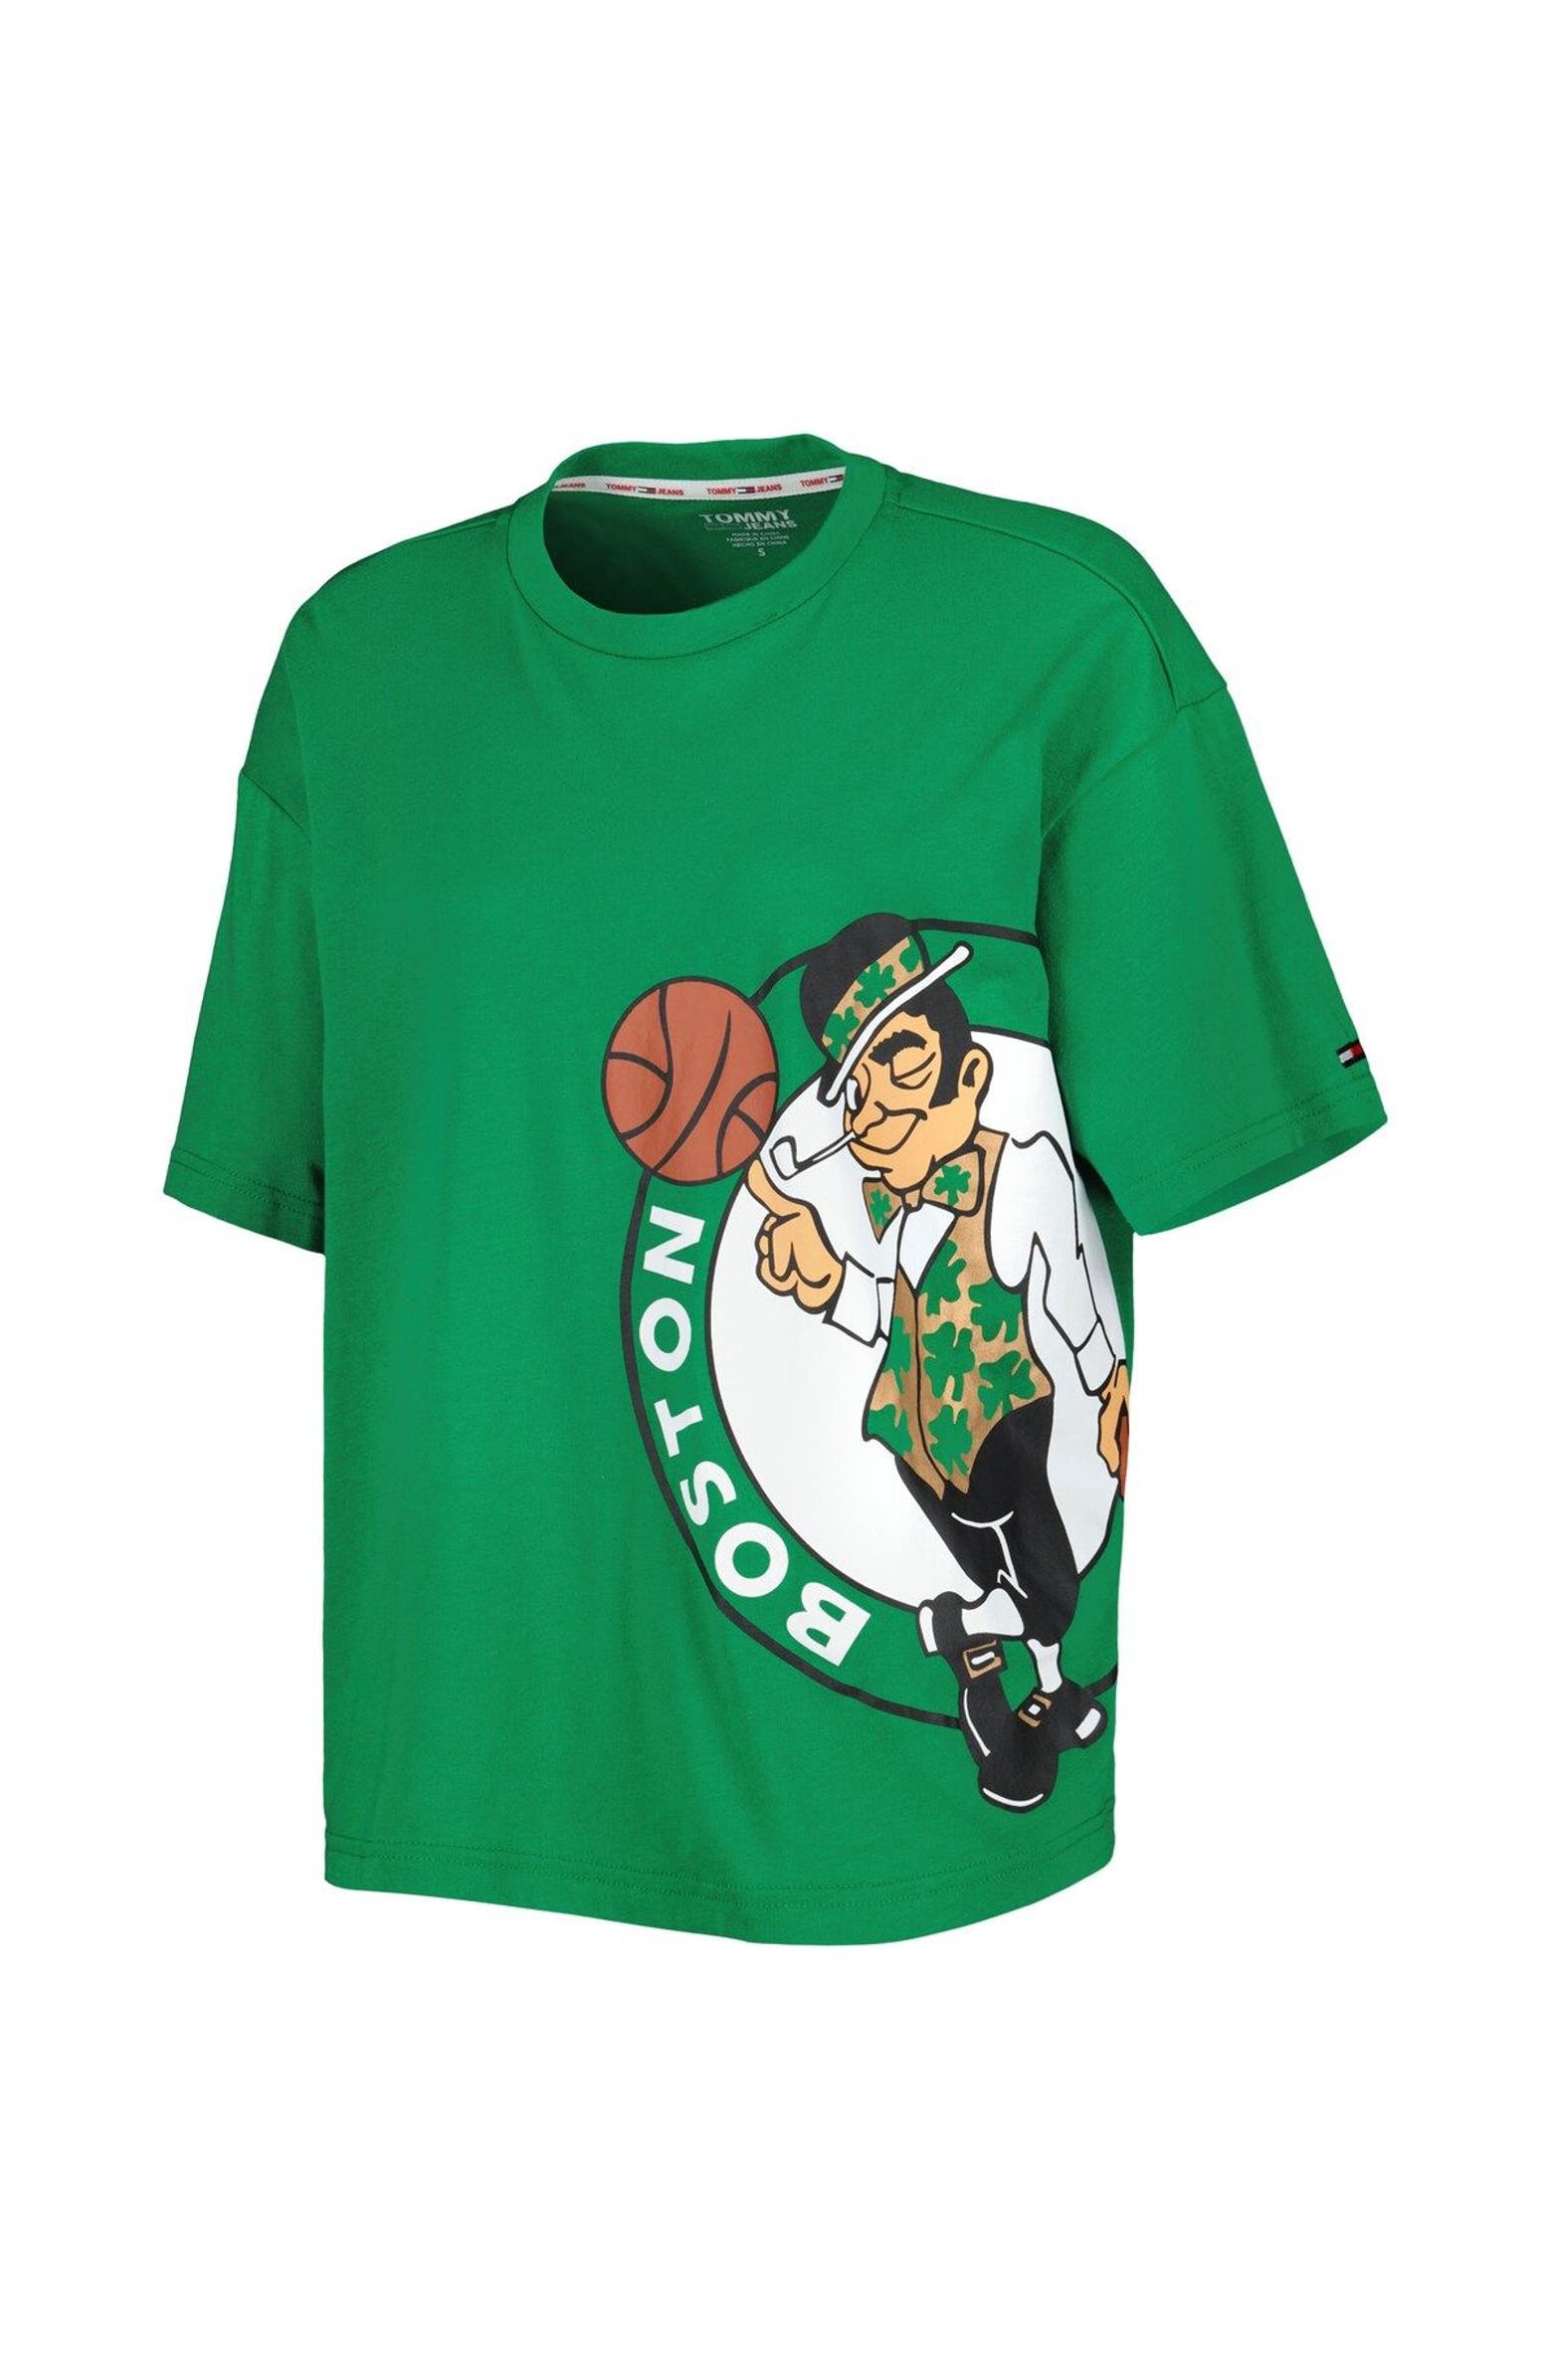 TOMMY JEANS Women's Tommy Jeans Kelly Green Boston Celtics Bianca T ...